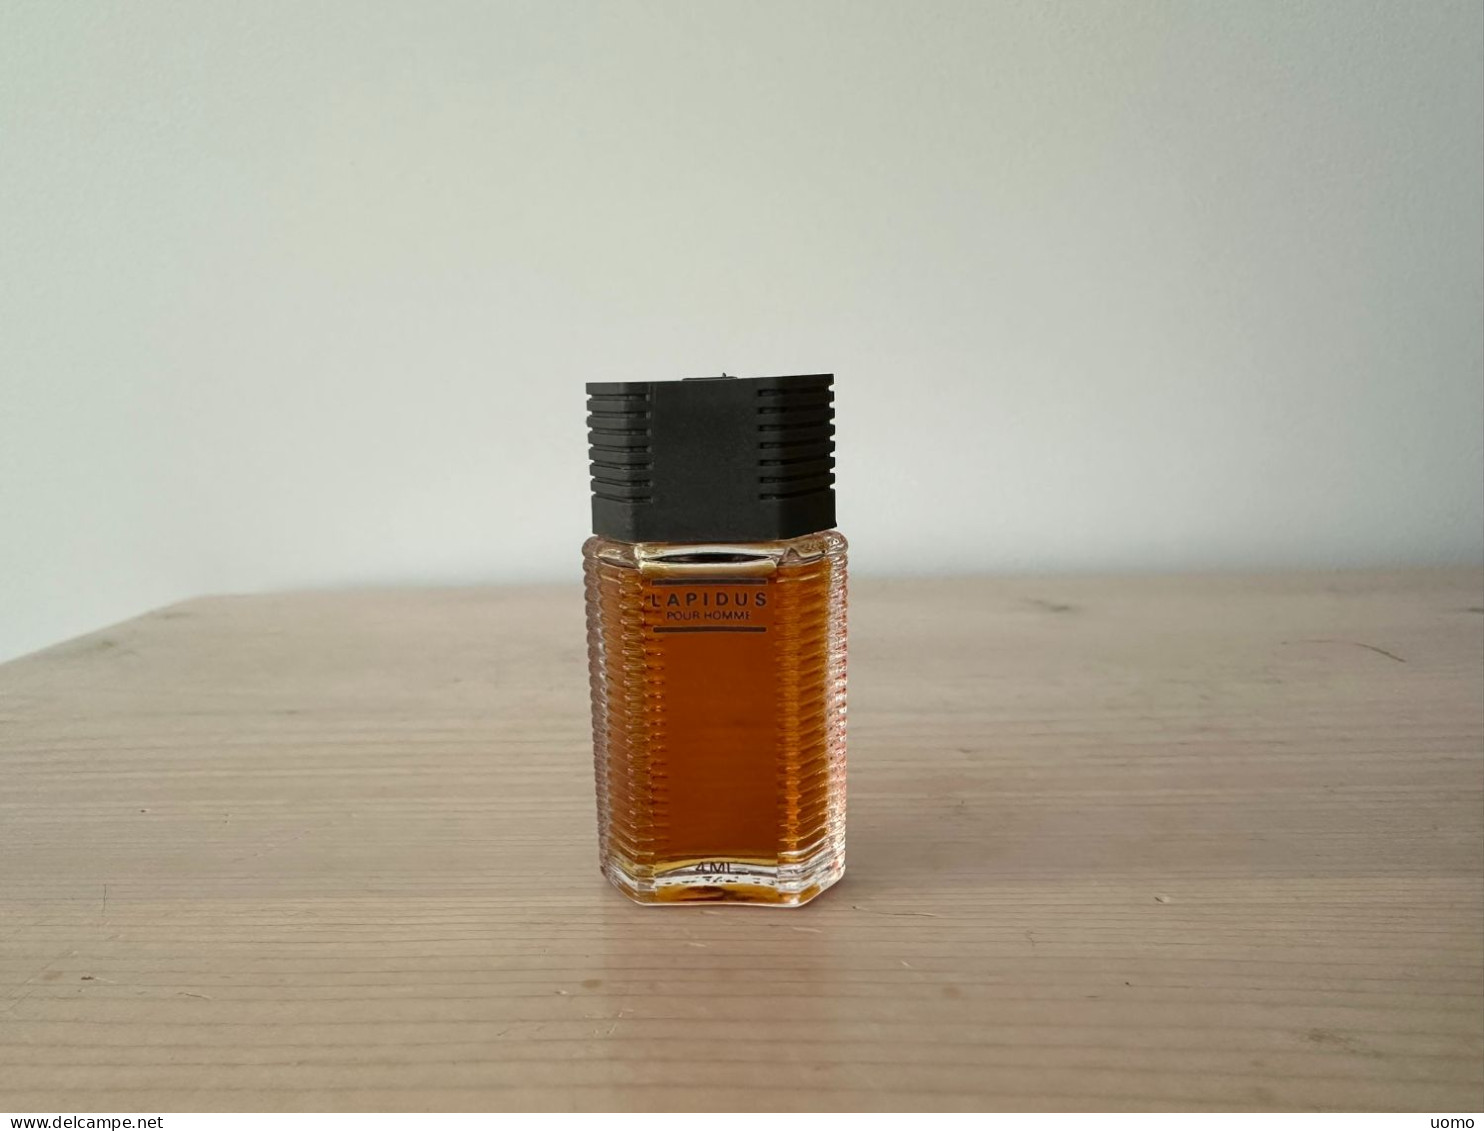 Lapidus Pour Homme EDT 4 Ml (transparant) - Miniatures Men's Fragrances (without Box)